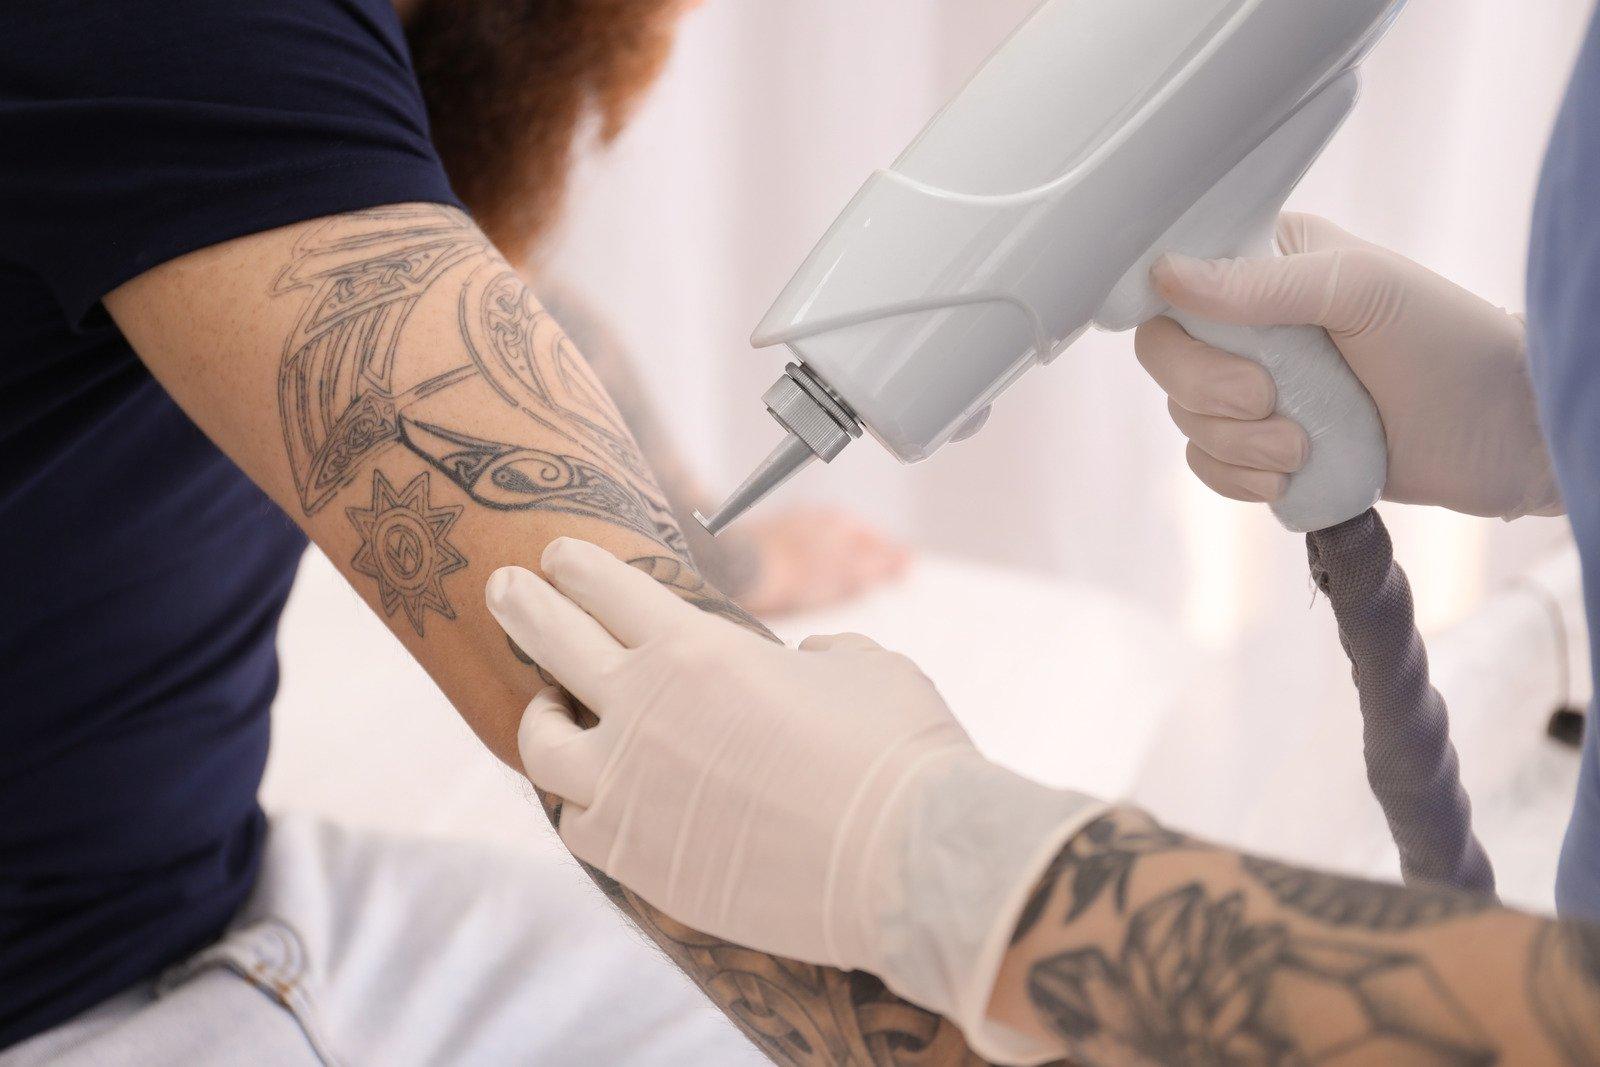 tattoo removal method, tattooed skin, Tattoo removal